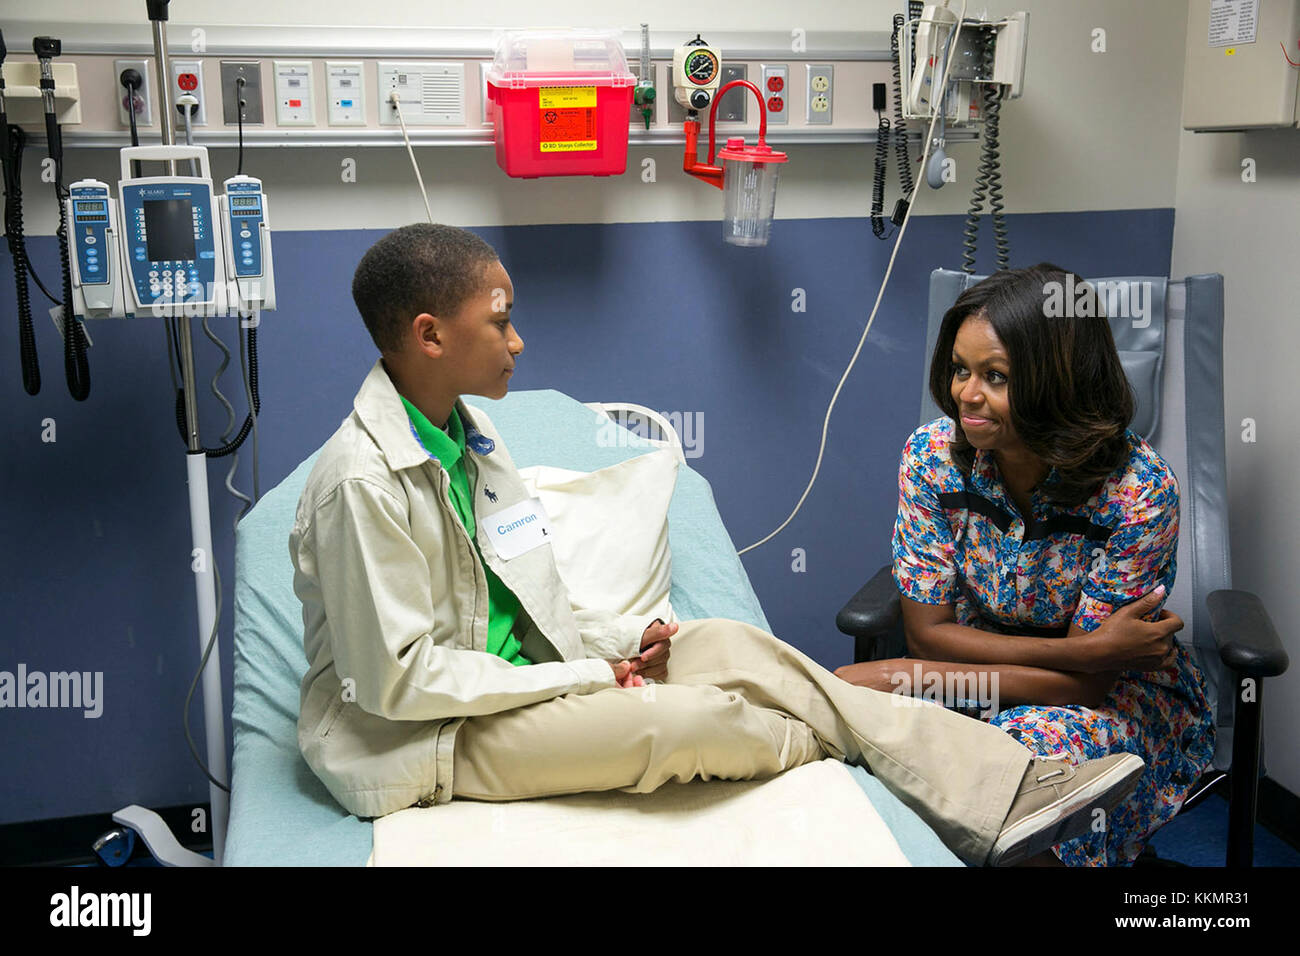 La primera dama Michelle Obama visitas con camron stevens en su habitación en St Jude children's research hospital en Memphis, Tenn, sept. 17, 2014. Foto de stock